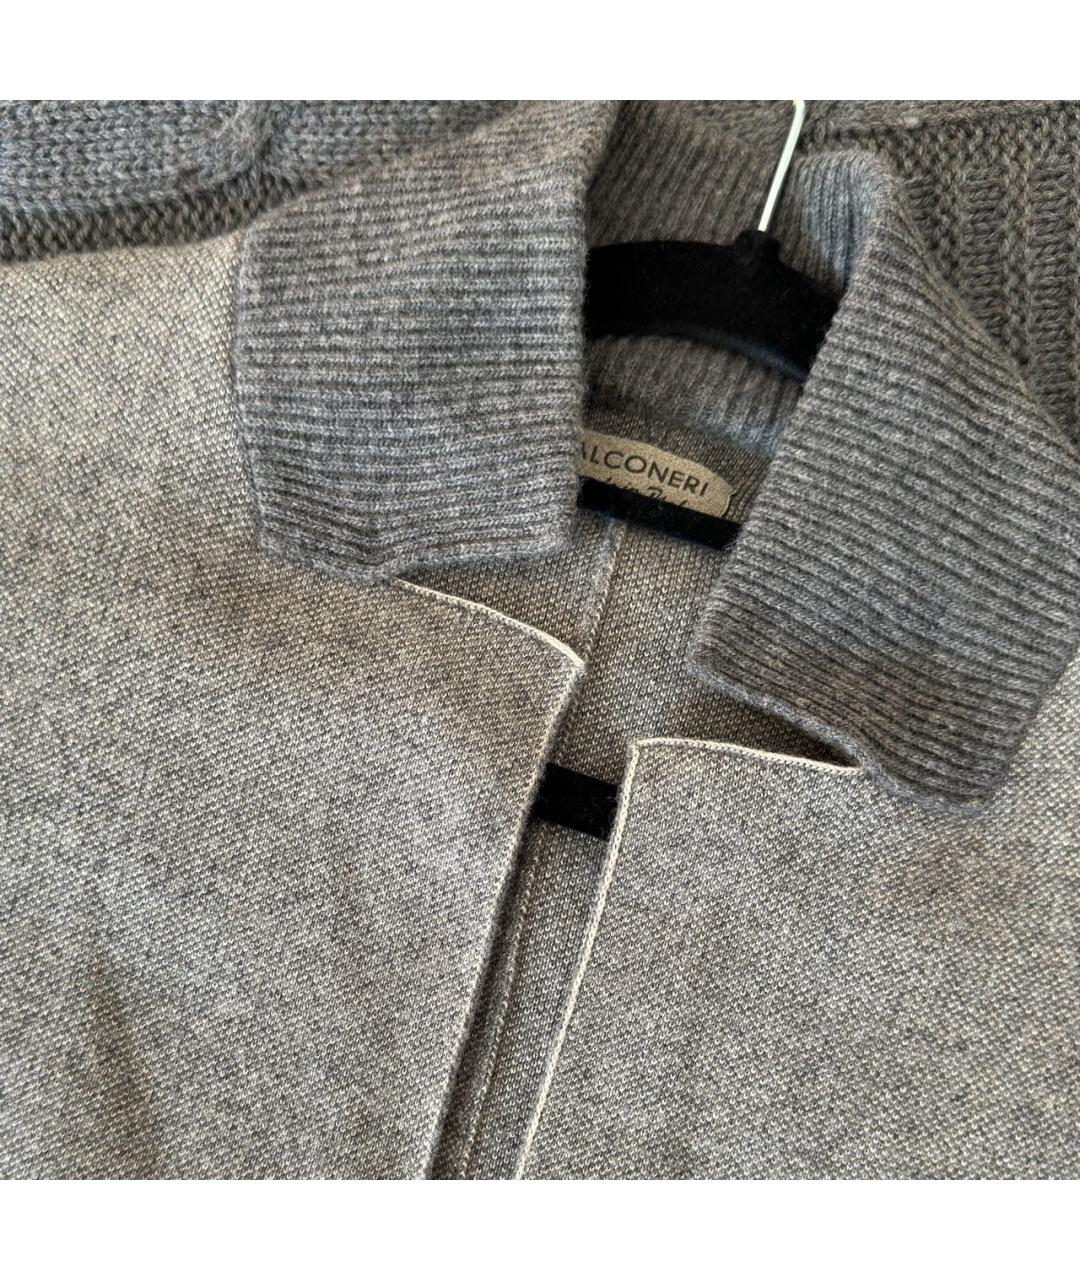 FALCONERI Серый кашемировый жакет/пиджак, фото 3